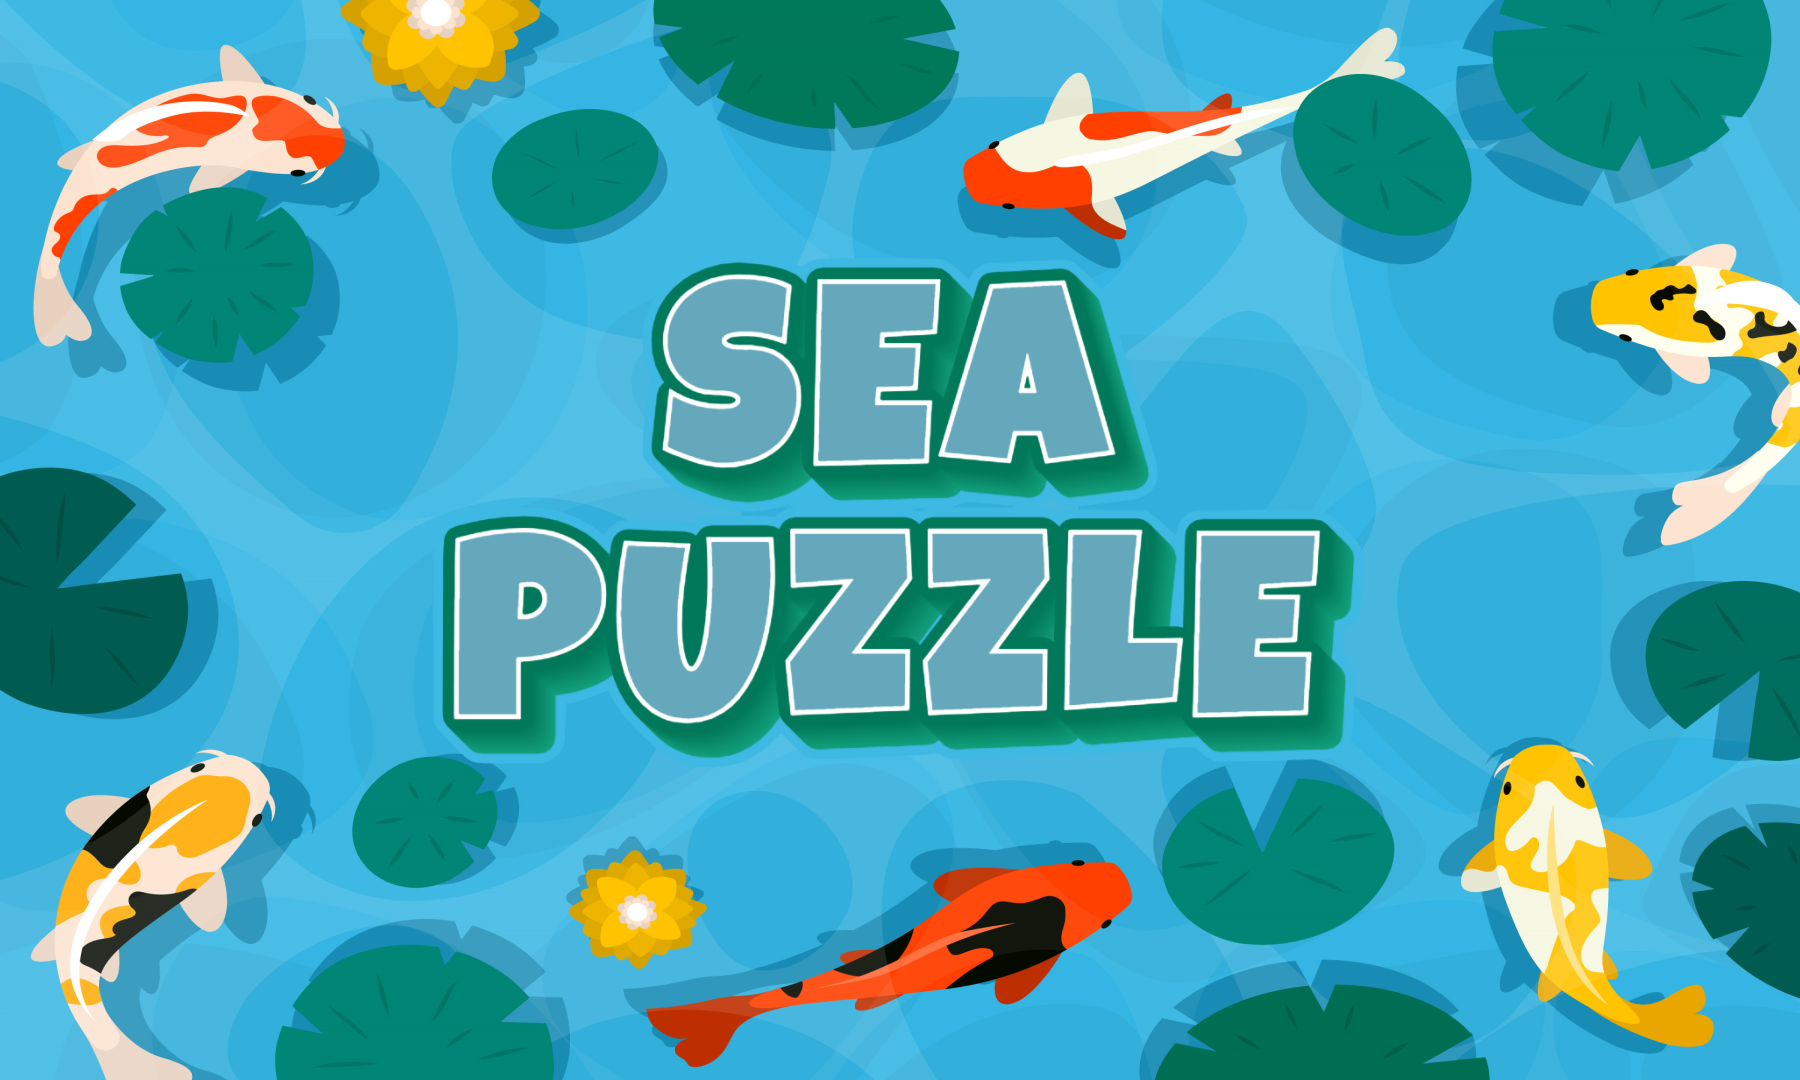 SeaPuzzle